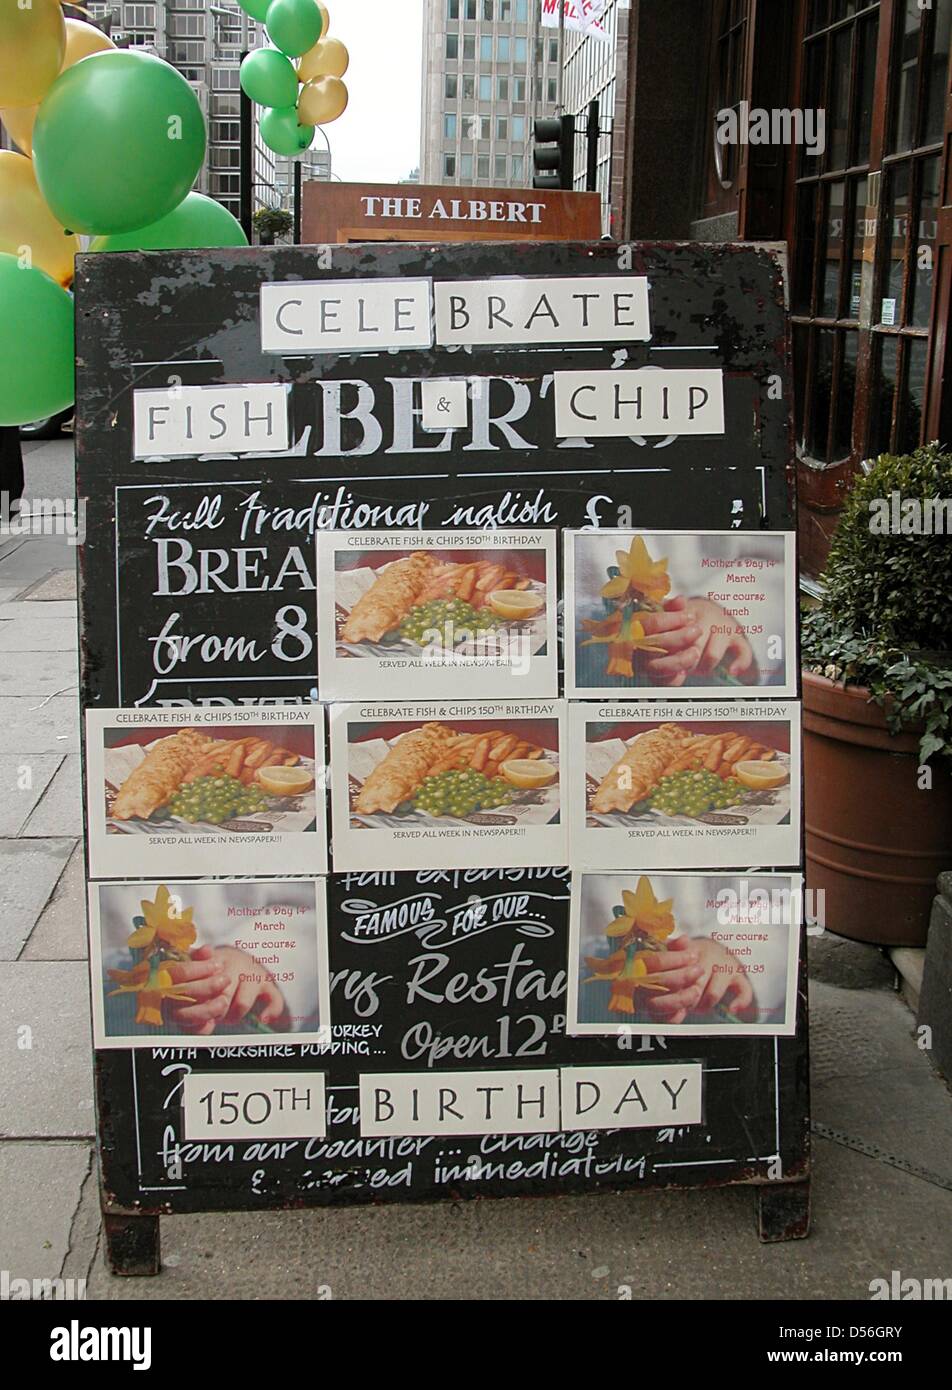 Un pub pubblicizza le varie versioni di Fish 'n' Chips, Gran Bretagna nazionale pasto, a Londra, in Gran Bretagna, 10 marzo 2010. Fish 'n' Chips è stato presumibilmente inventato 150 anni fa. Foto: Annette Reuther Foto Stock